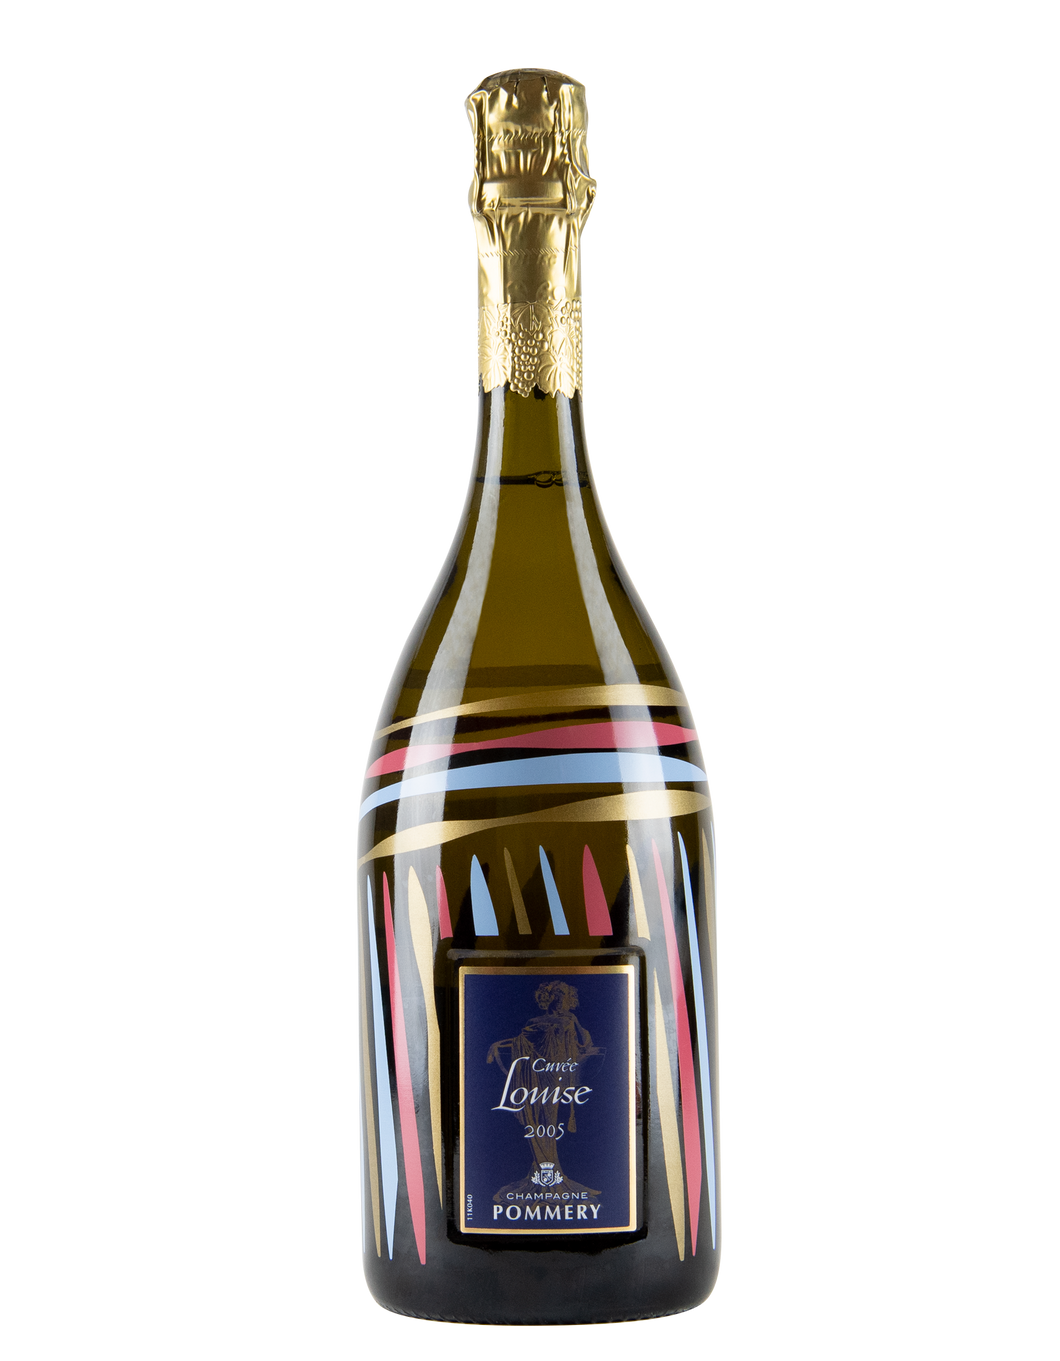 Champagne Brut Grand Cru Cuvée Louise Edition Parcelles 2005